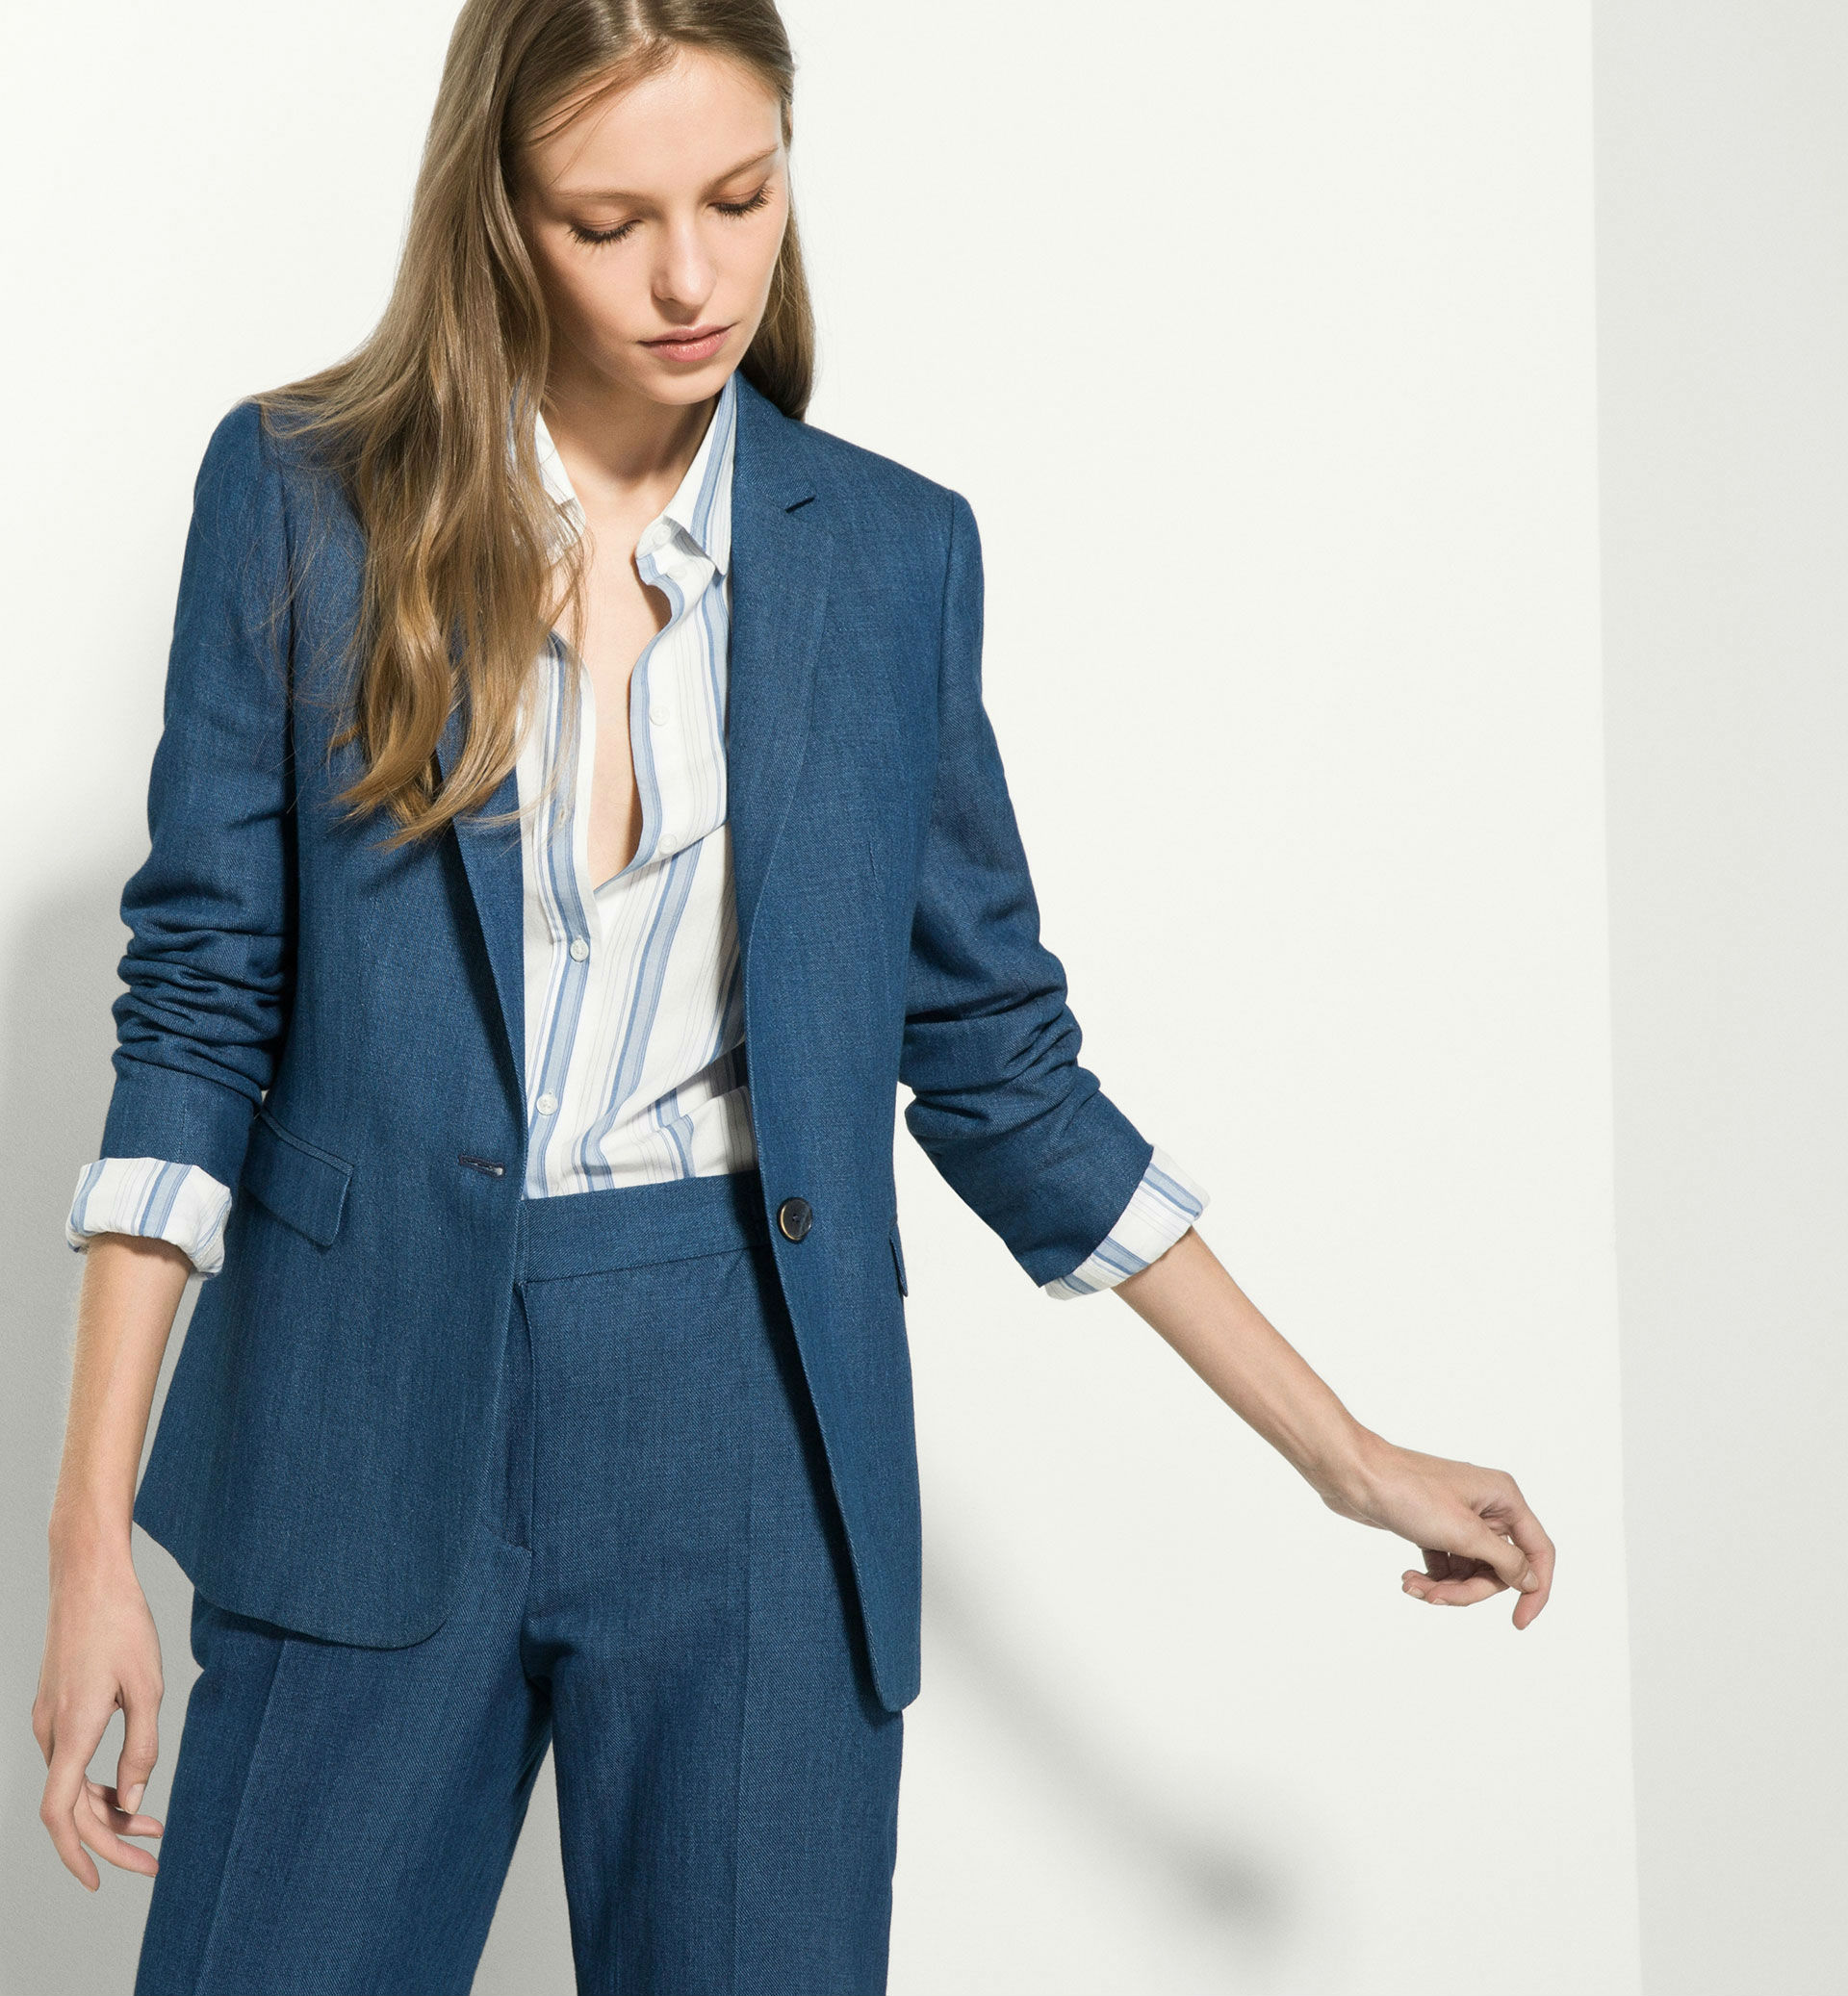 Última tendencia, de chaqueta de Zara, Mango y Massimo Dutti primavera 2016 - Modalia.es